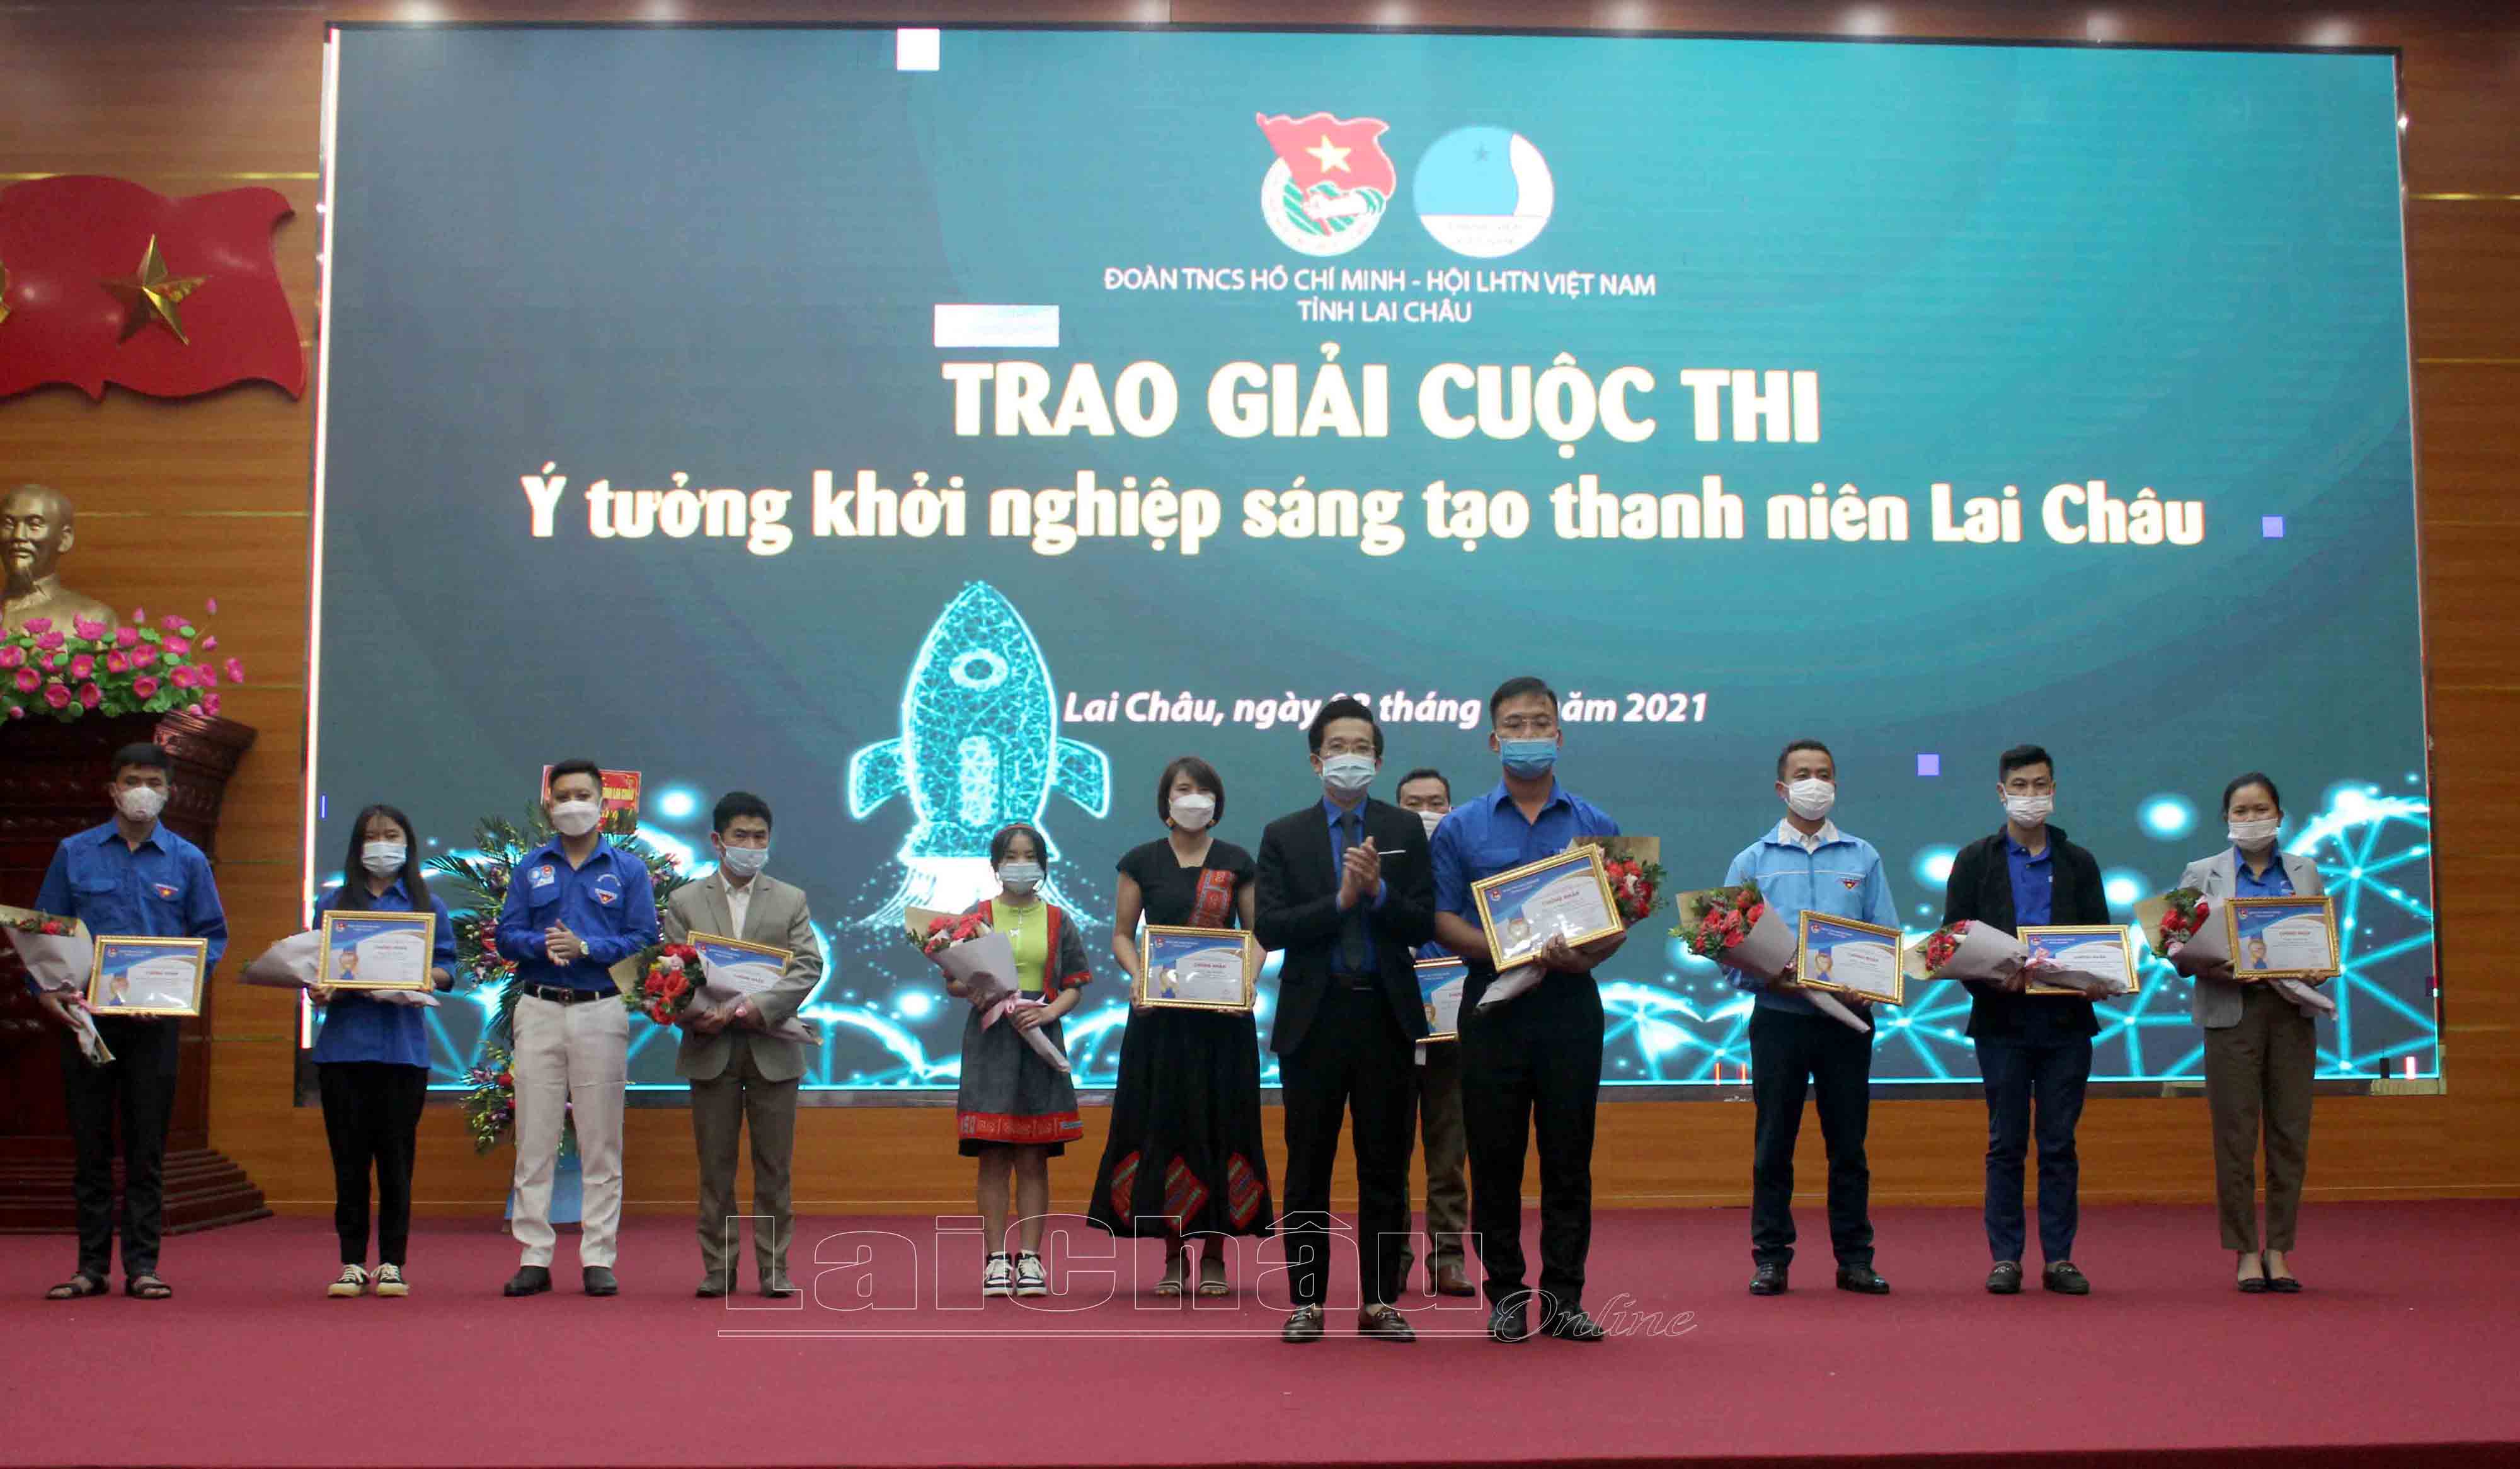 -	Đồng chí Nguyễn Tiến Thịnh - Bí thư Tỉnh đoàn, Chủ tịch Hội Liên hiệp Thanh niên Việt Nam trao giải nhất trong Cuộc thi Ý tưởng khởi nghiệp sáng tạo thanh niên Lai Châu.